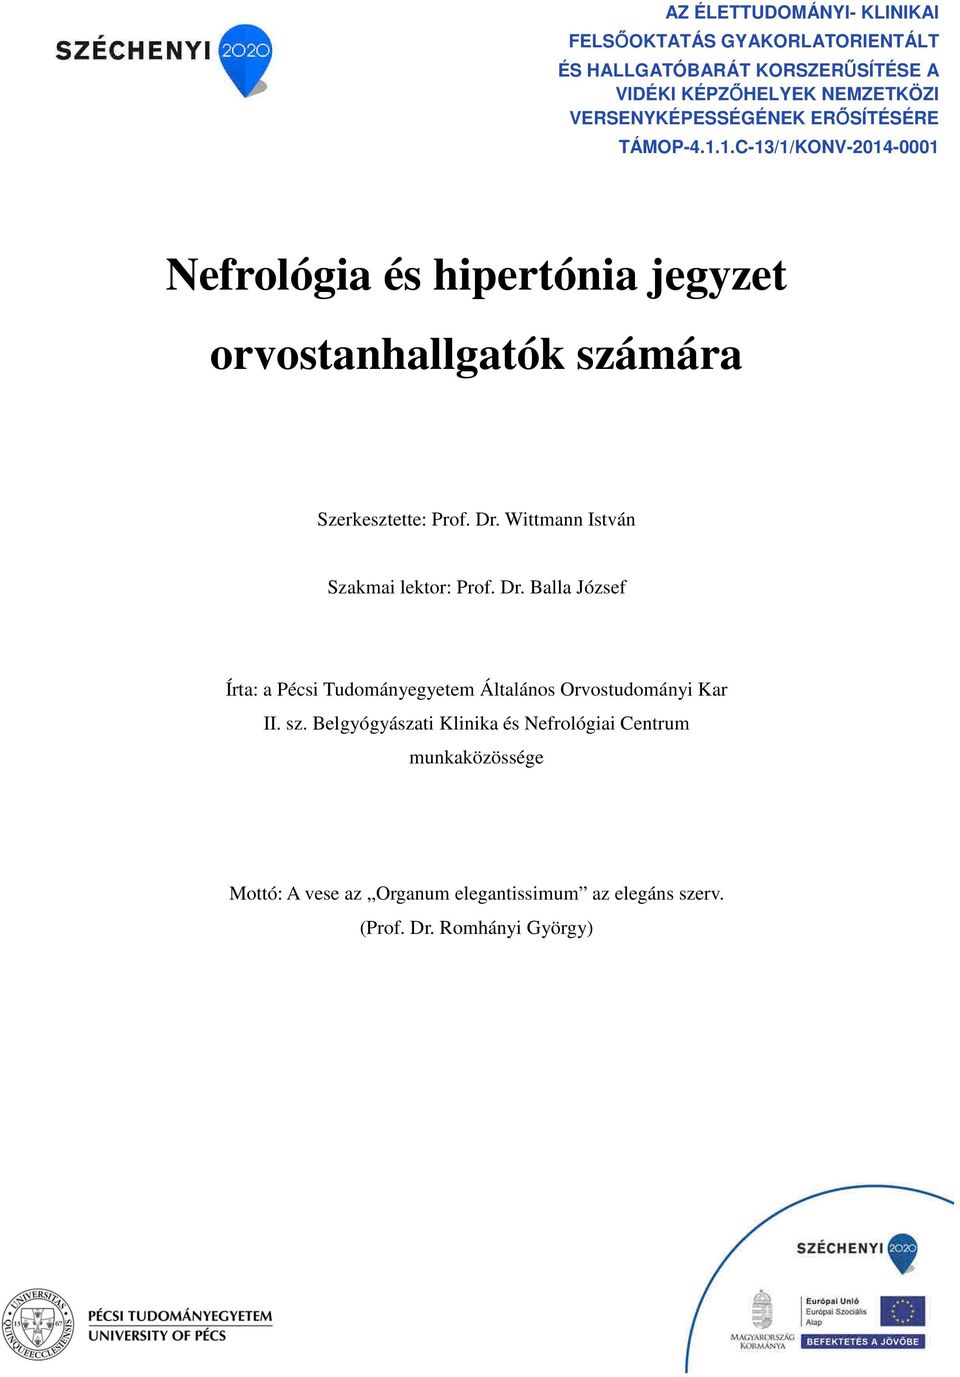 Nefrológia és hipertónia jegyzet orvostanhallgatók számára - PDF Free Download